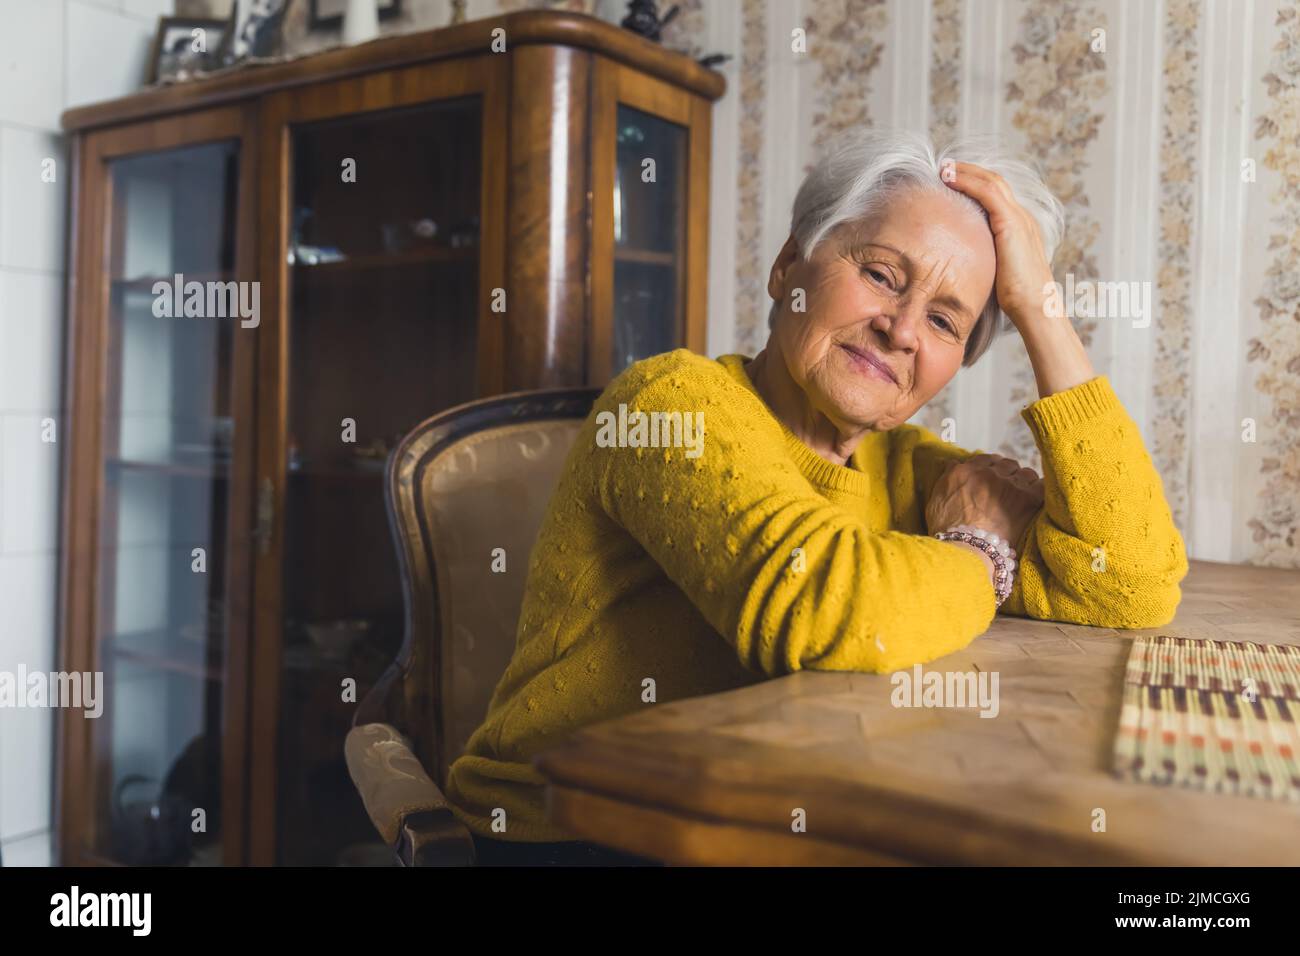 Bella piccola donna anziana dai capelli corti seduta su una sedia al tavolo del soggiorno in un piacevole umore con la testa appoggiata sul braccio e guardando via pensando al suo passato. Foto di alta qualità Foto Stock